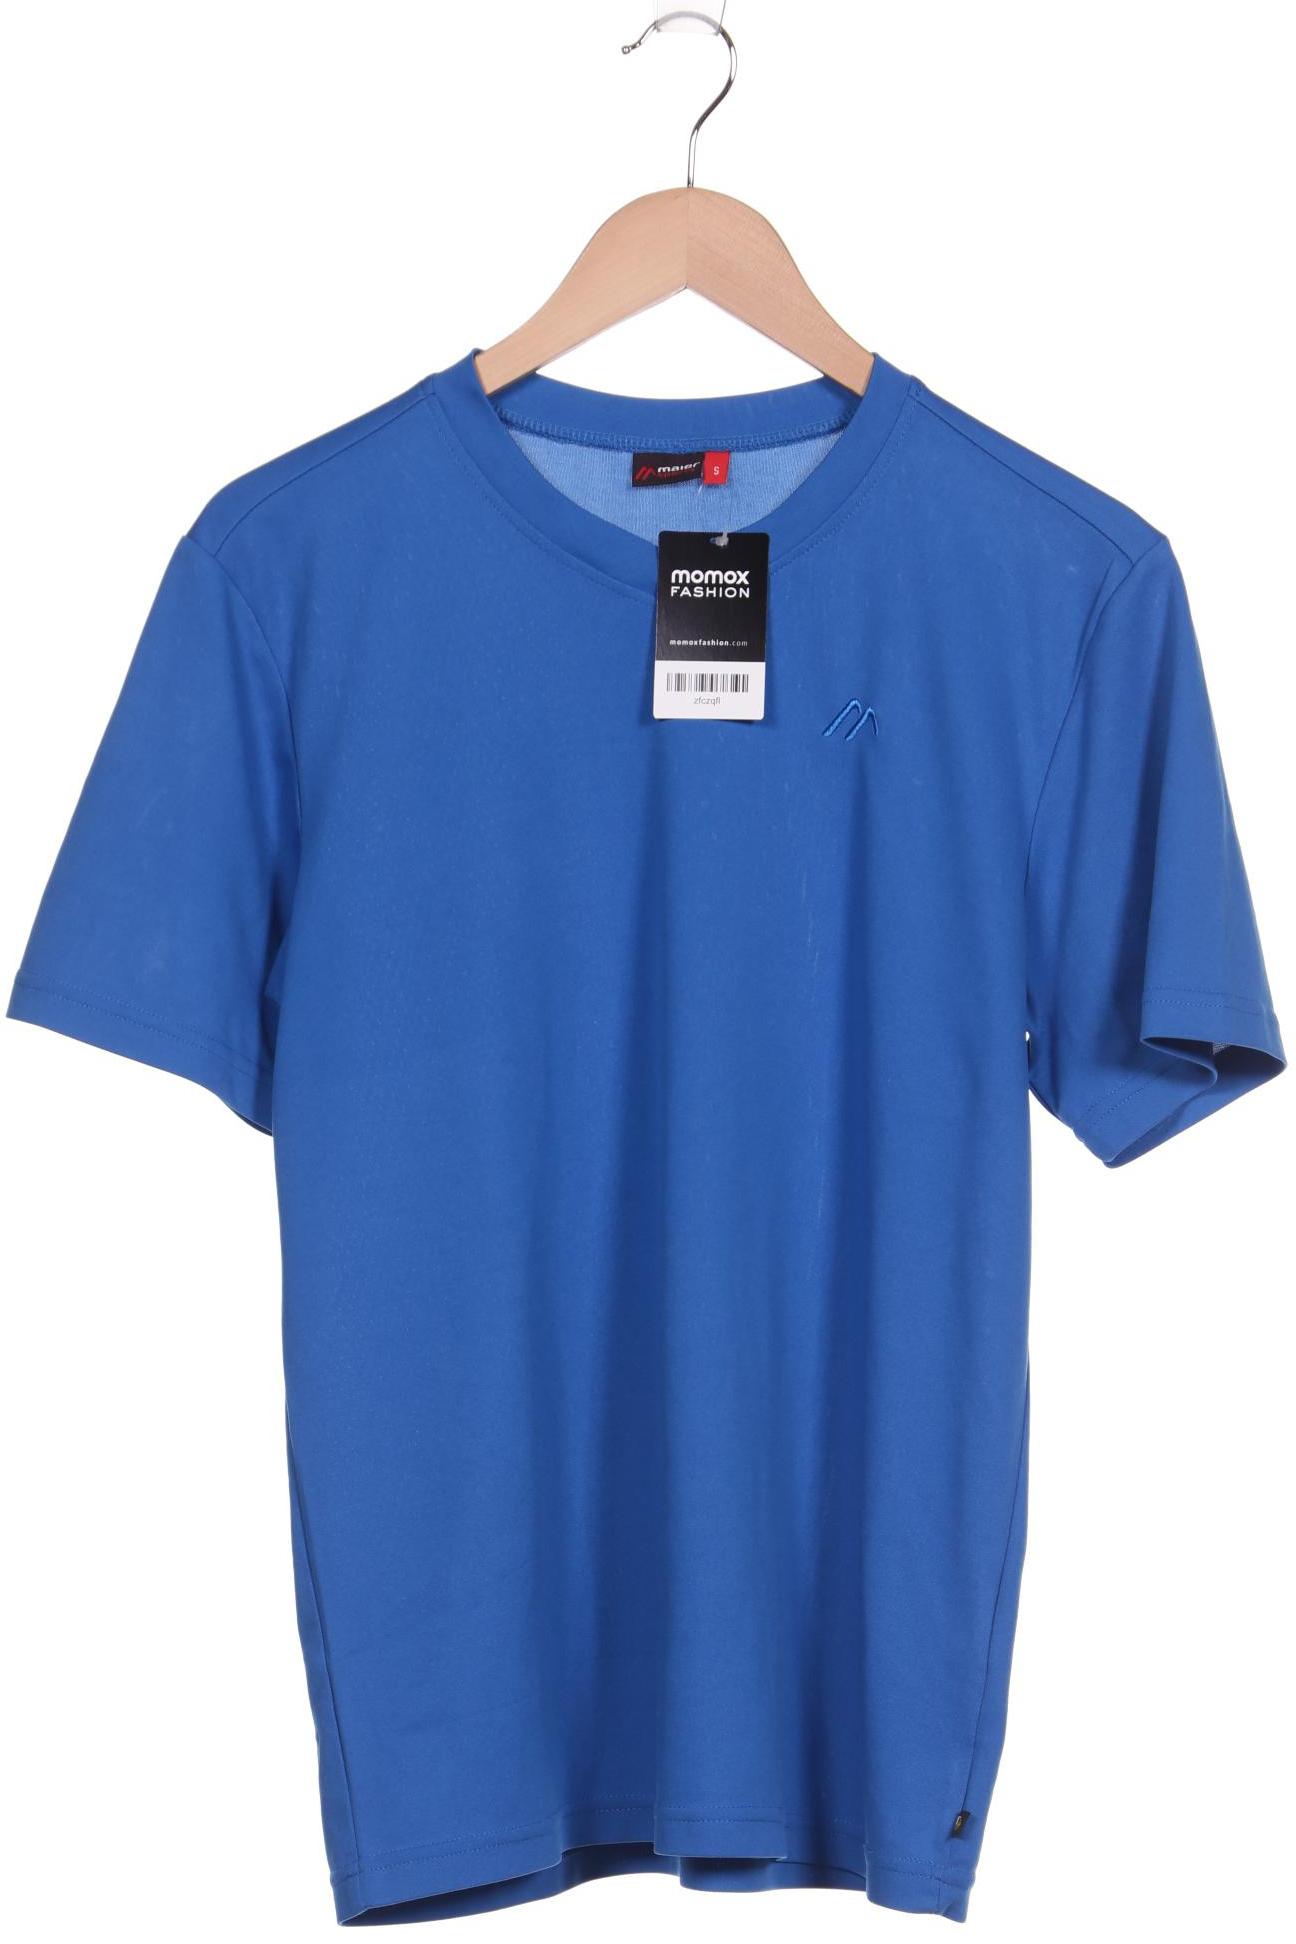 Maier Sports Damen T-Shirt, blau von maier sports